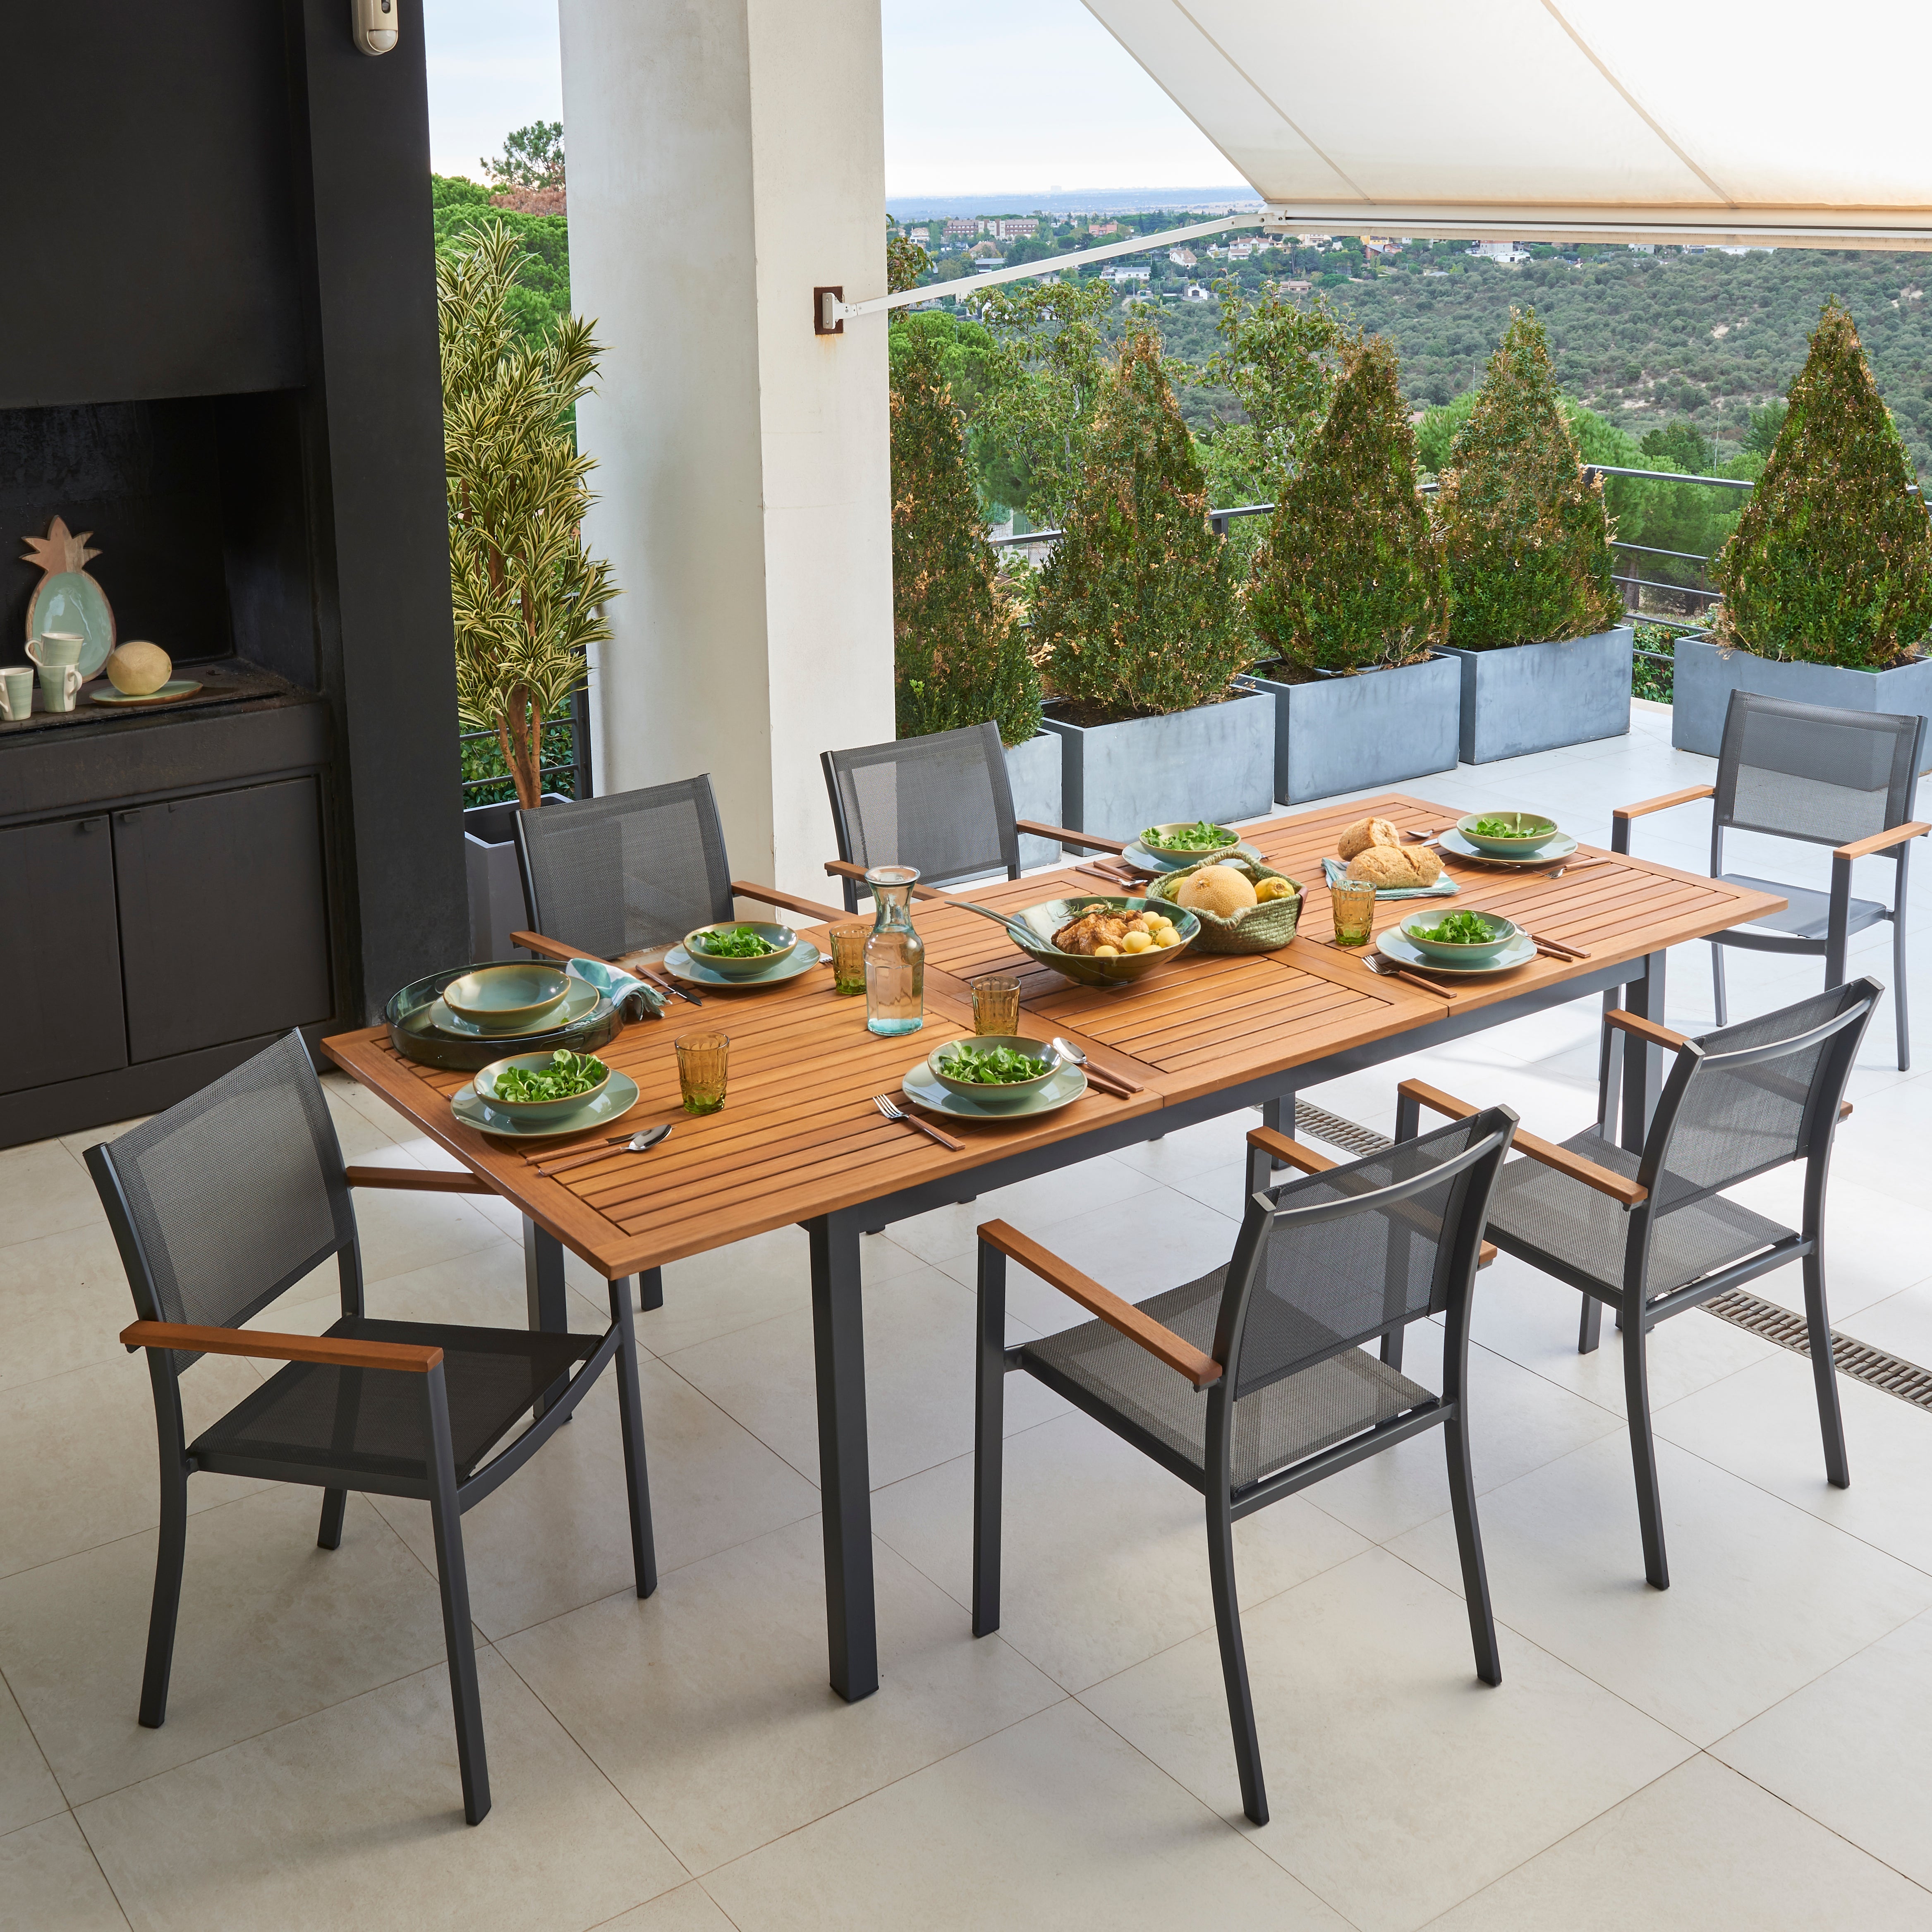 Conjuntos mesas y sillas de exterior | Leroy Merlin